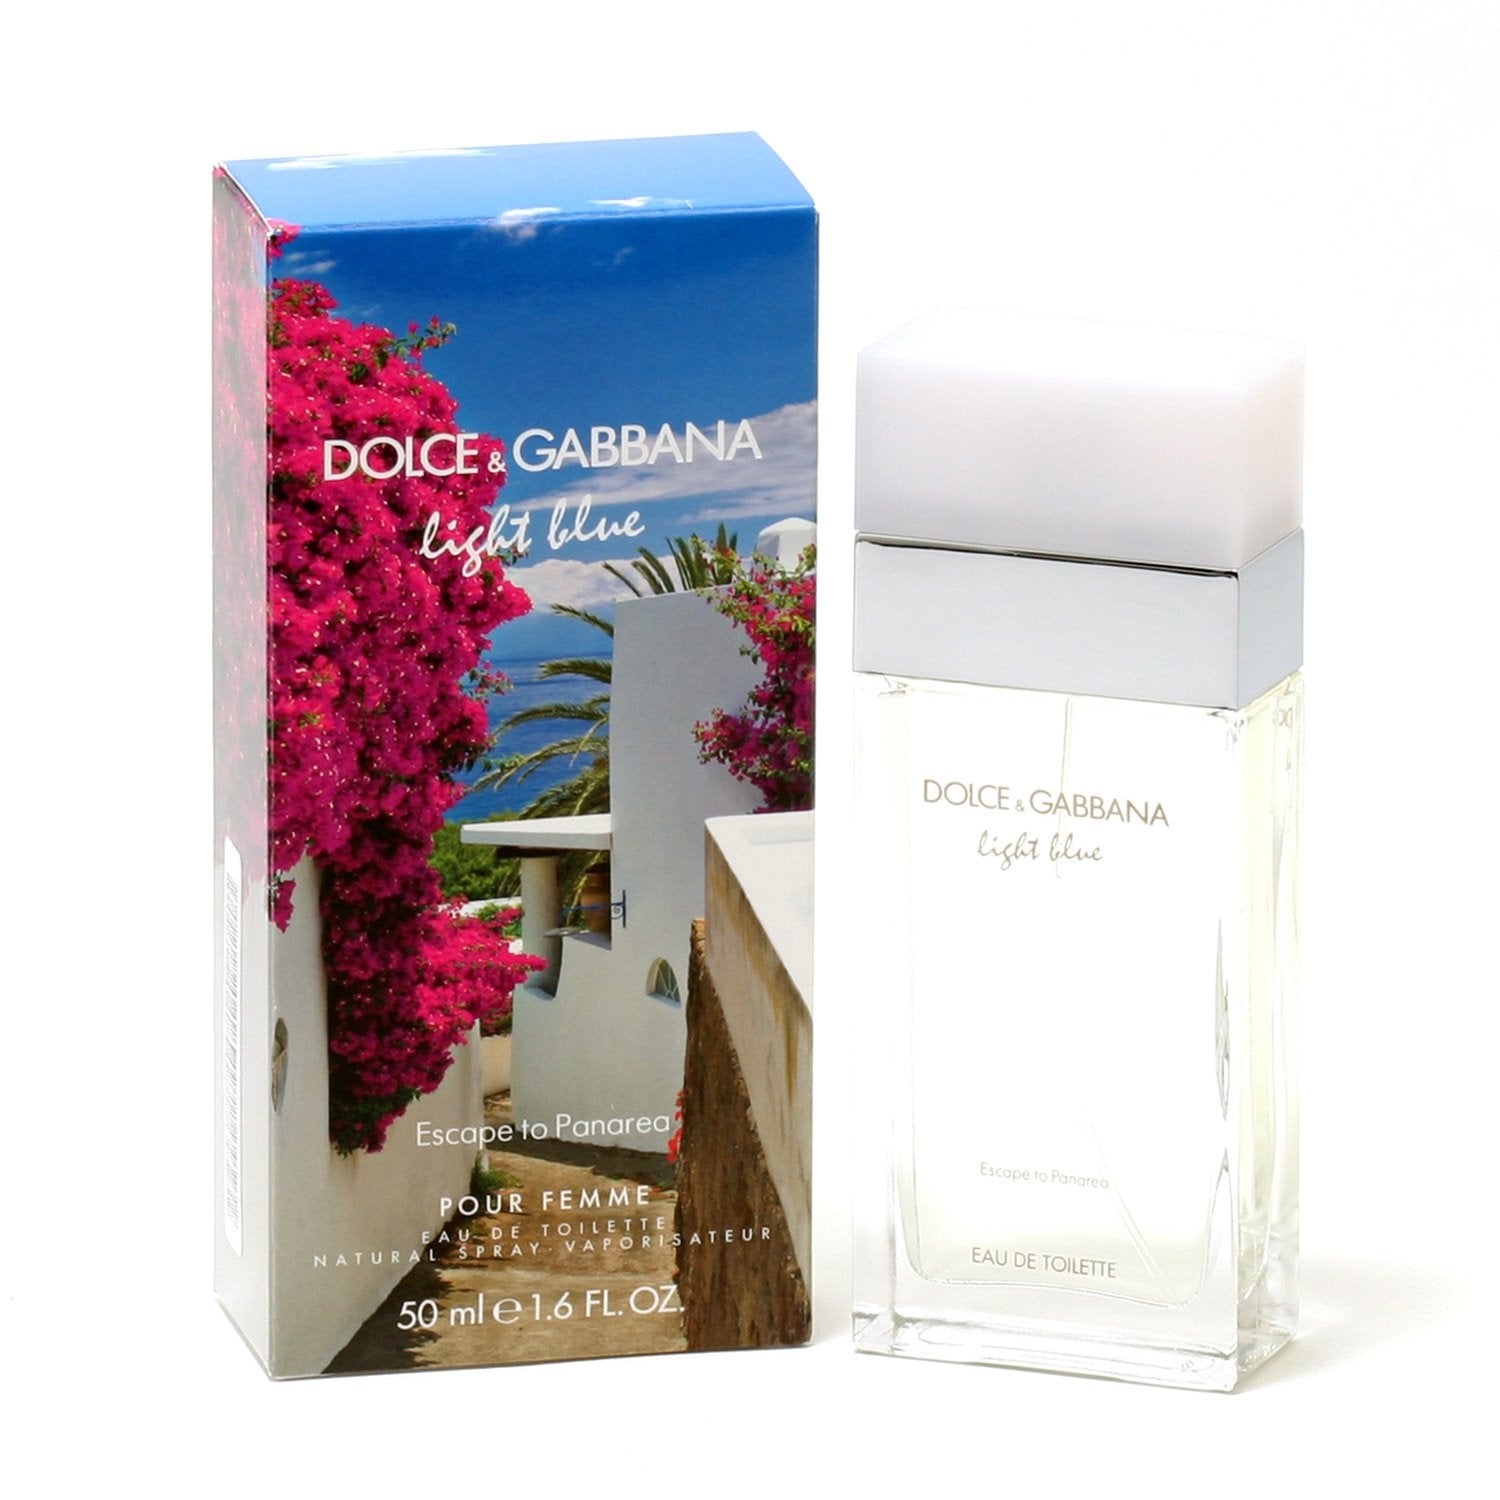 Perfume - DOLCE & GABBANA LIGHT BLUE ESCAPE TO PANAREA FOR WOMEN - EAU DE TOILETTE